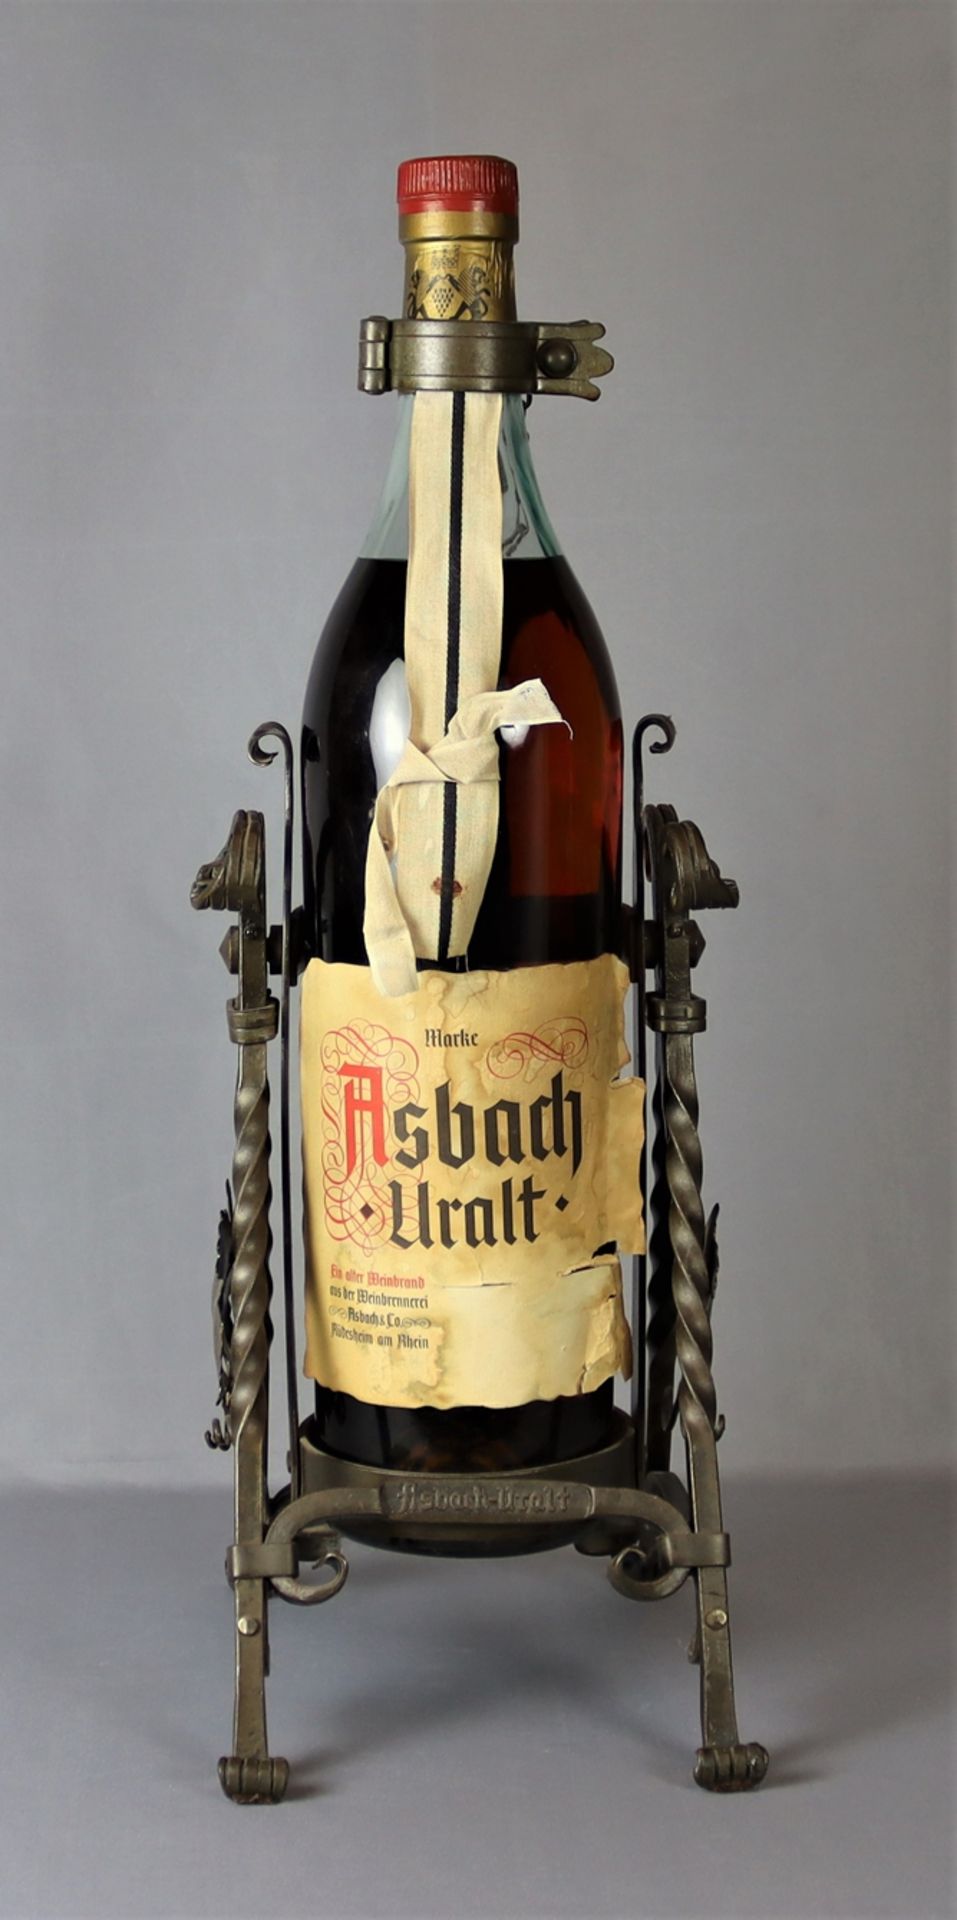 Flasche Weinbrand '"Asbach Uralt", mit Inhalt, ungeöffnet, Wachssiegel nicht gebrochen, aus Eisen g - Image 2 of 2